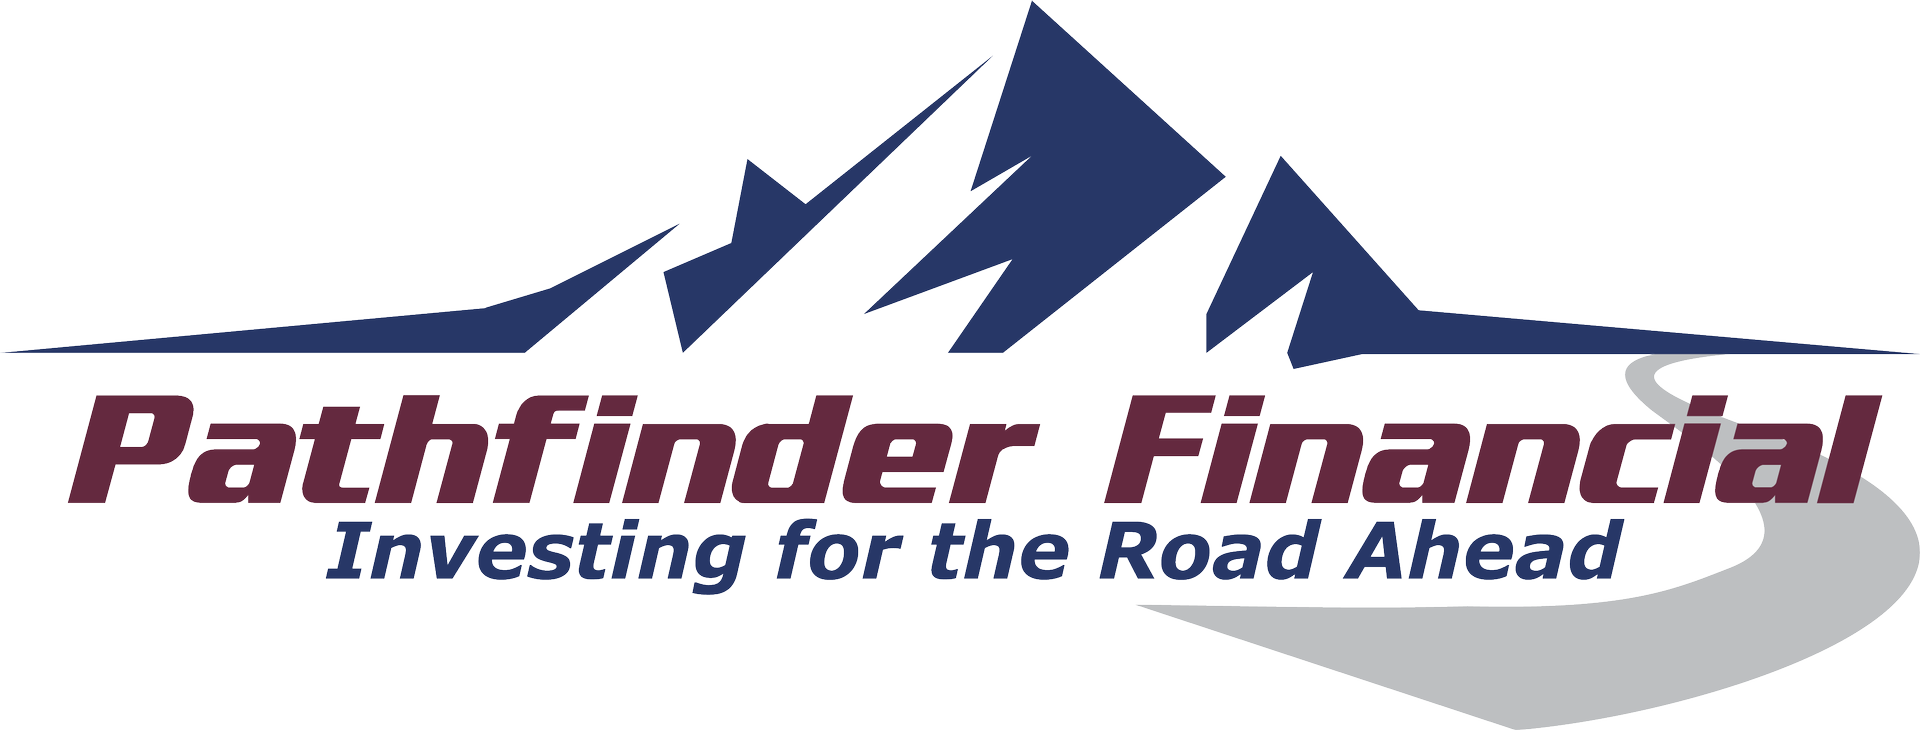 Pathfinder Financial